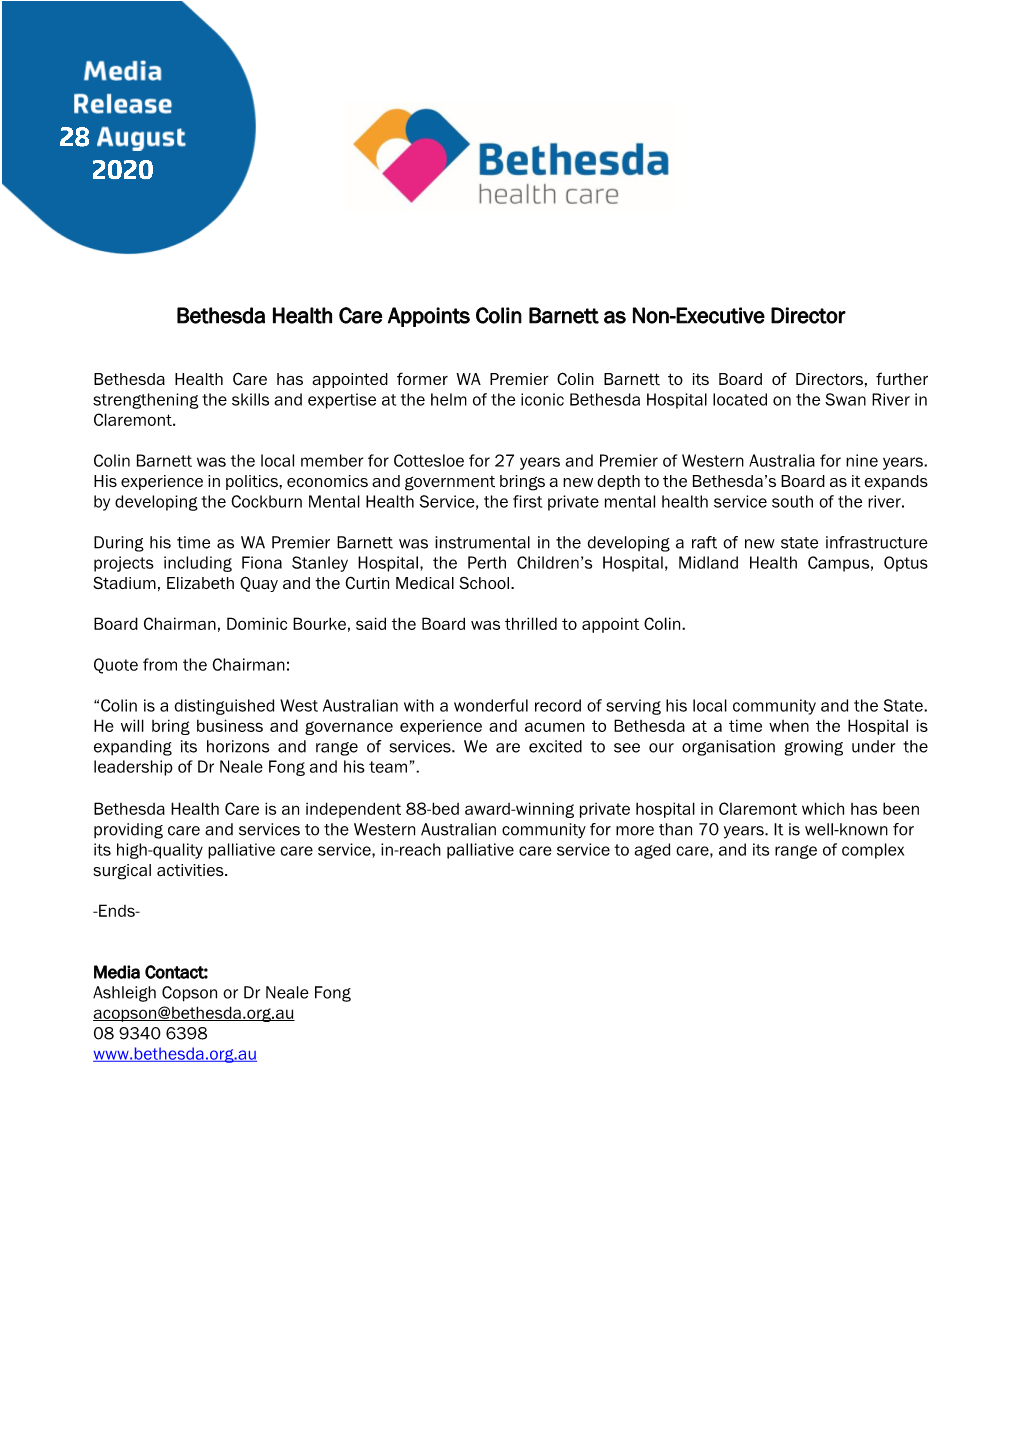 Bethesda Health Care Appoints Colin Barnett As Non-Executive Director